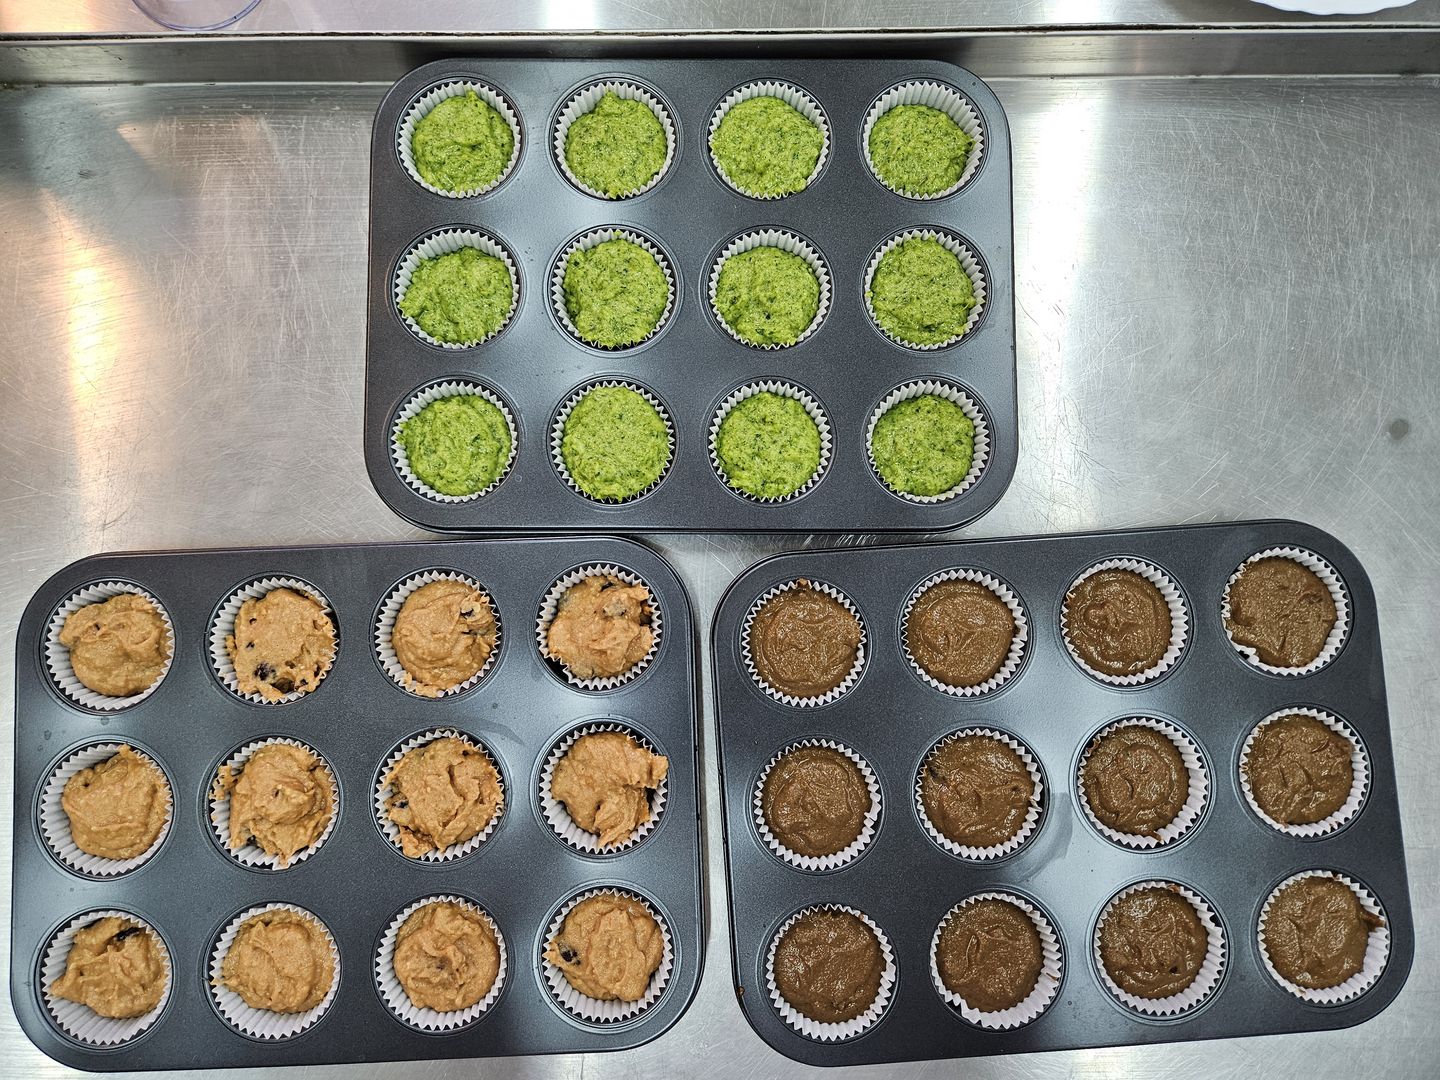 Trzy foremki na muffinki wypełnione surowym ciastem, zielonym, pomarańczowym i brązowym.